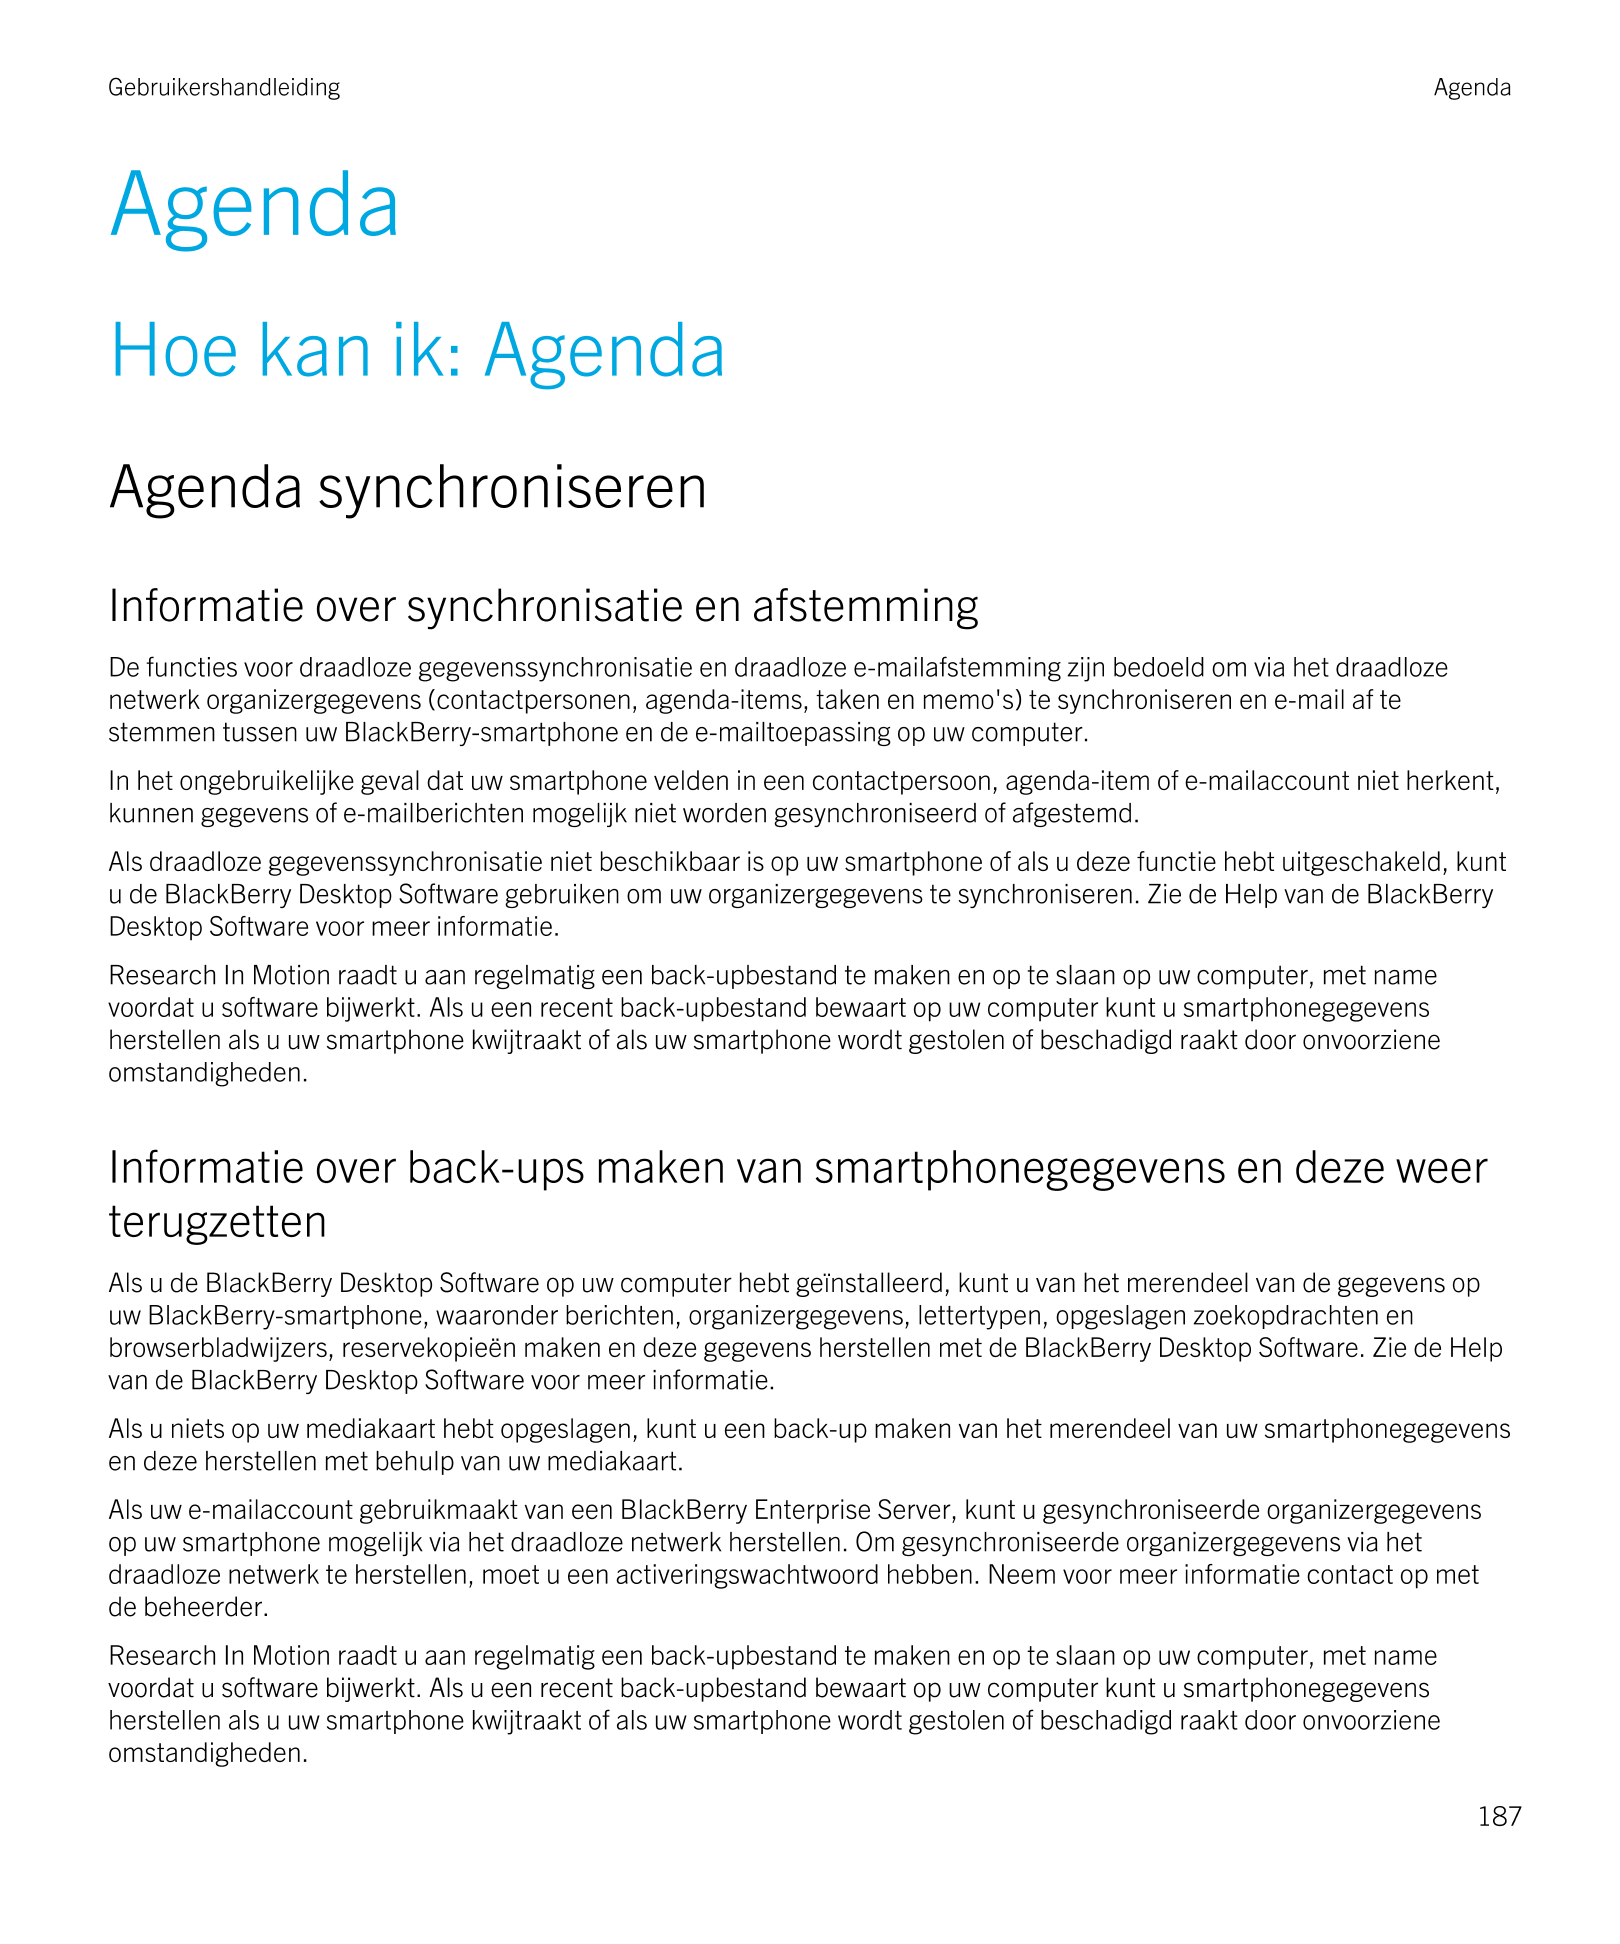 Gebruikershandleiding Agenda
Agenda
Hoe kan ik: Agenda
Agenda synchroniseren
Informatie over synchronisatie en afstemming
De fun